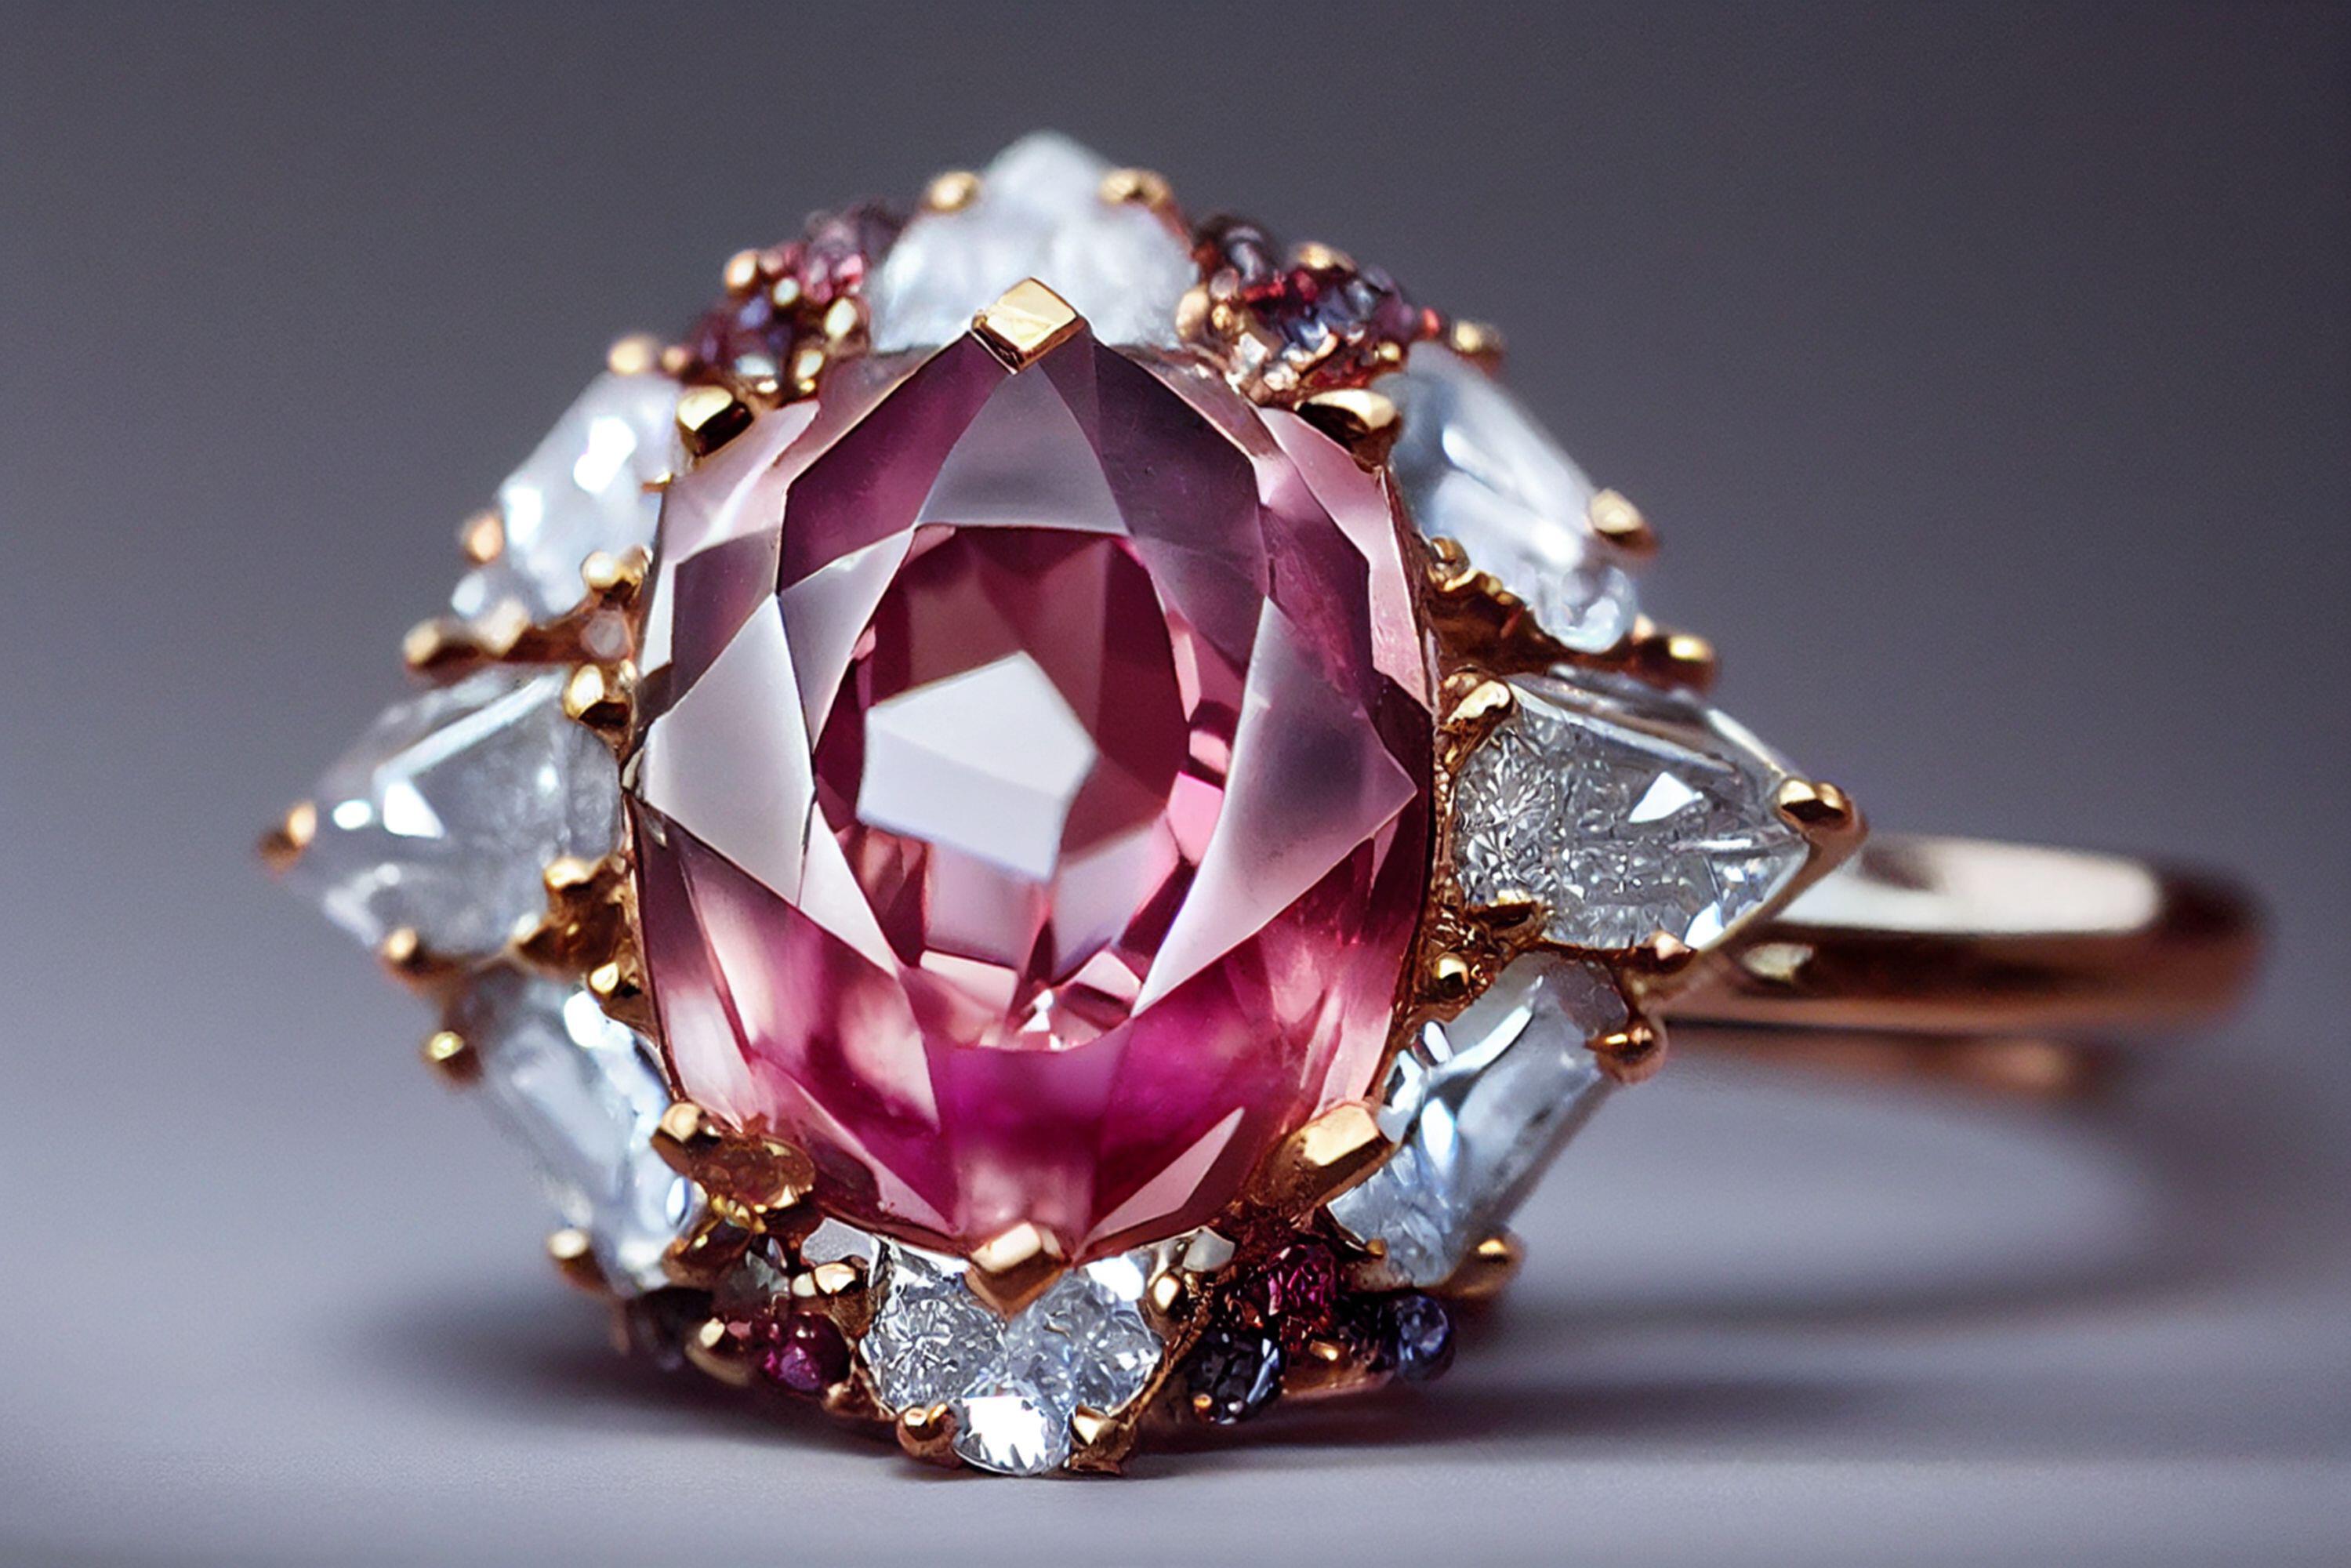 Diamantele roz sunt extrem de rare și râvnite. Ce au descoperit cercetătorii despre prețioasele cristale